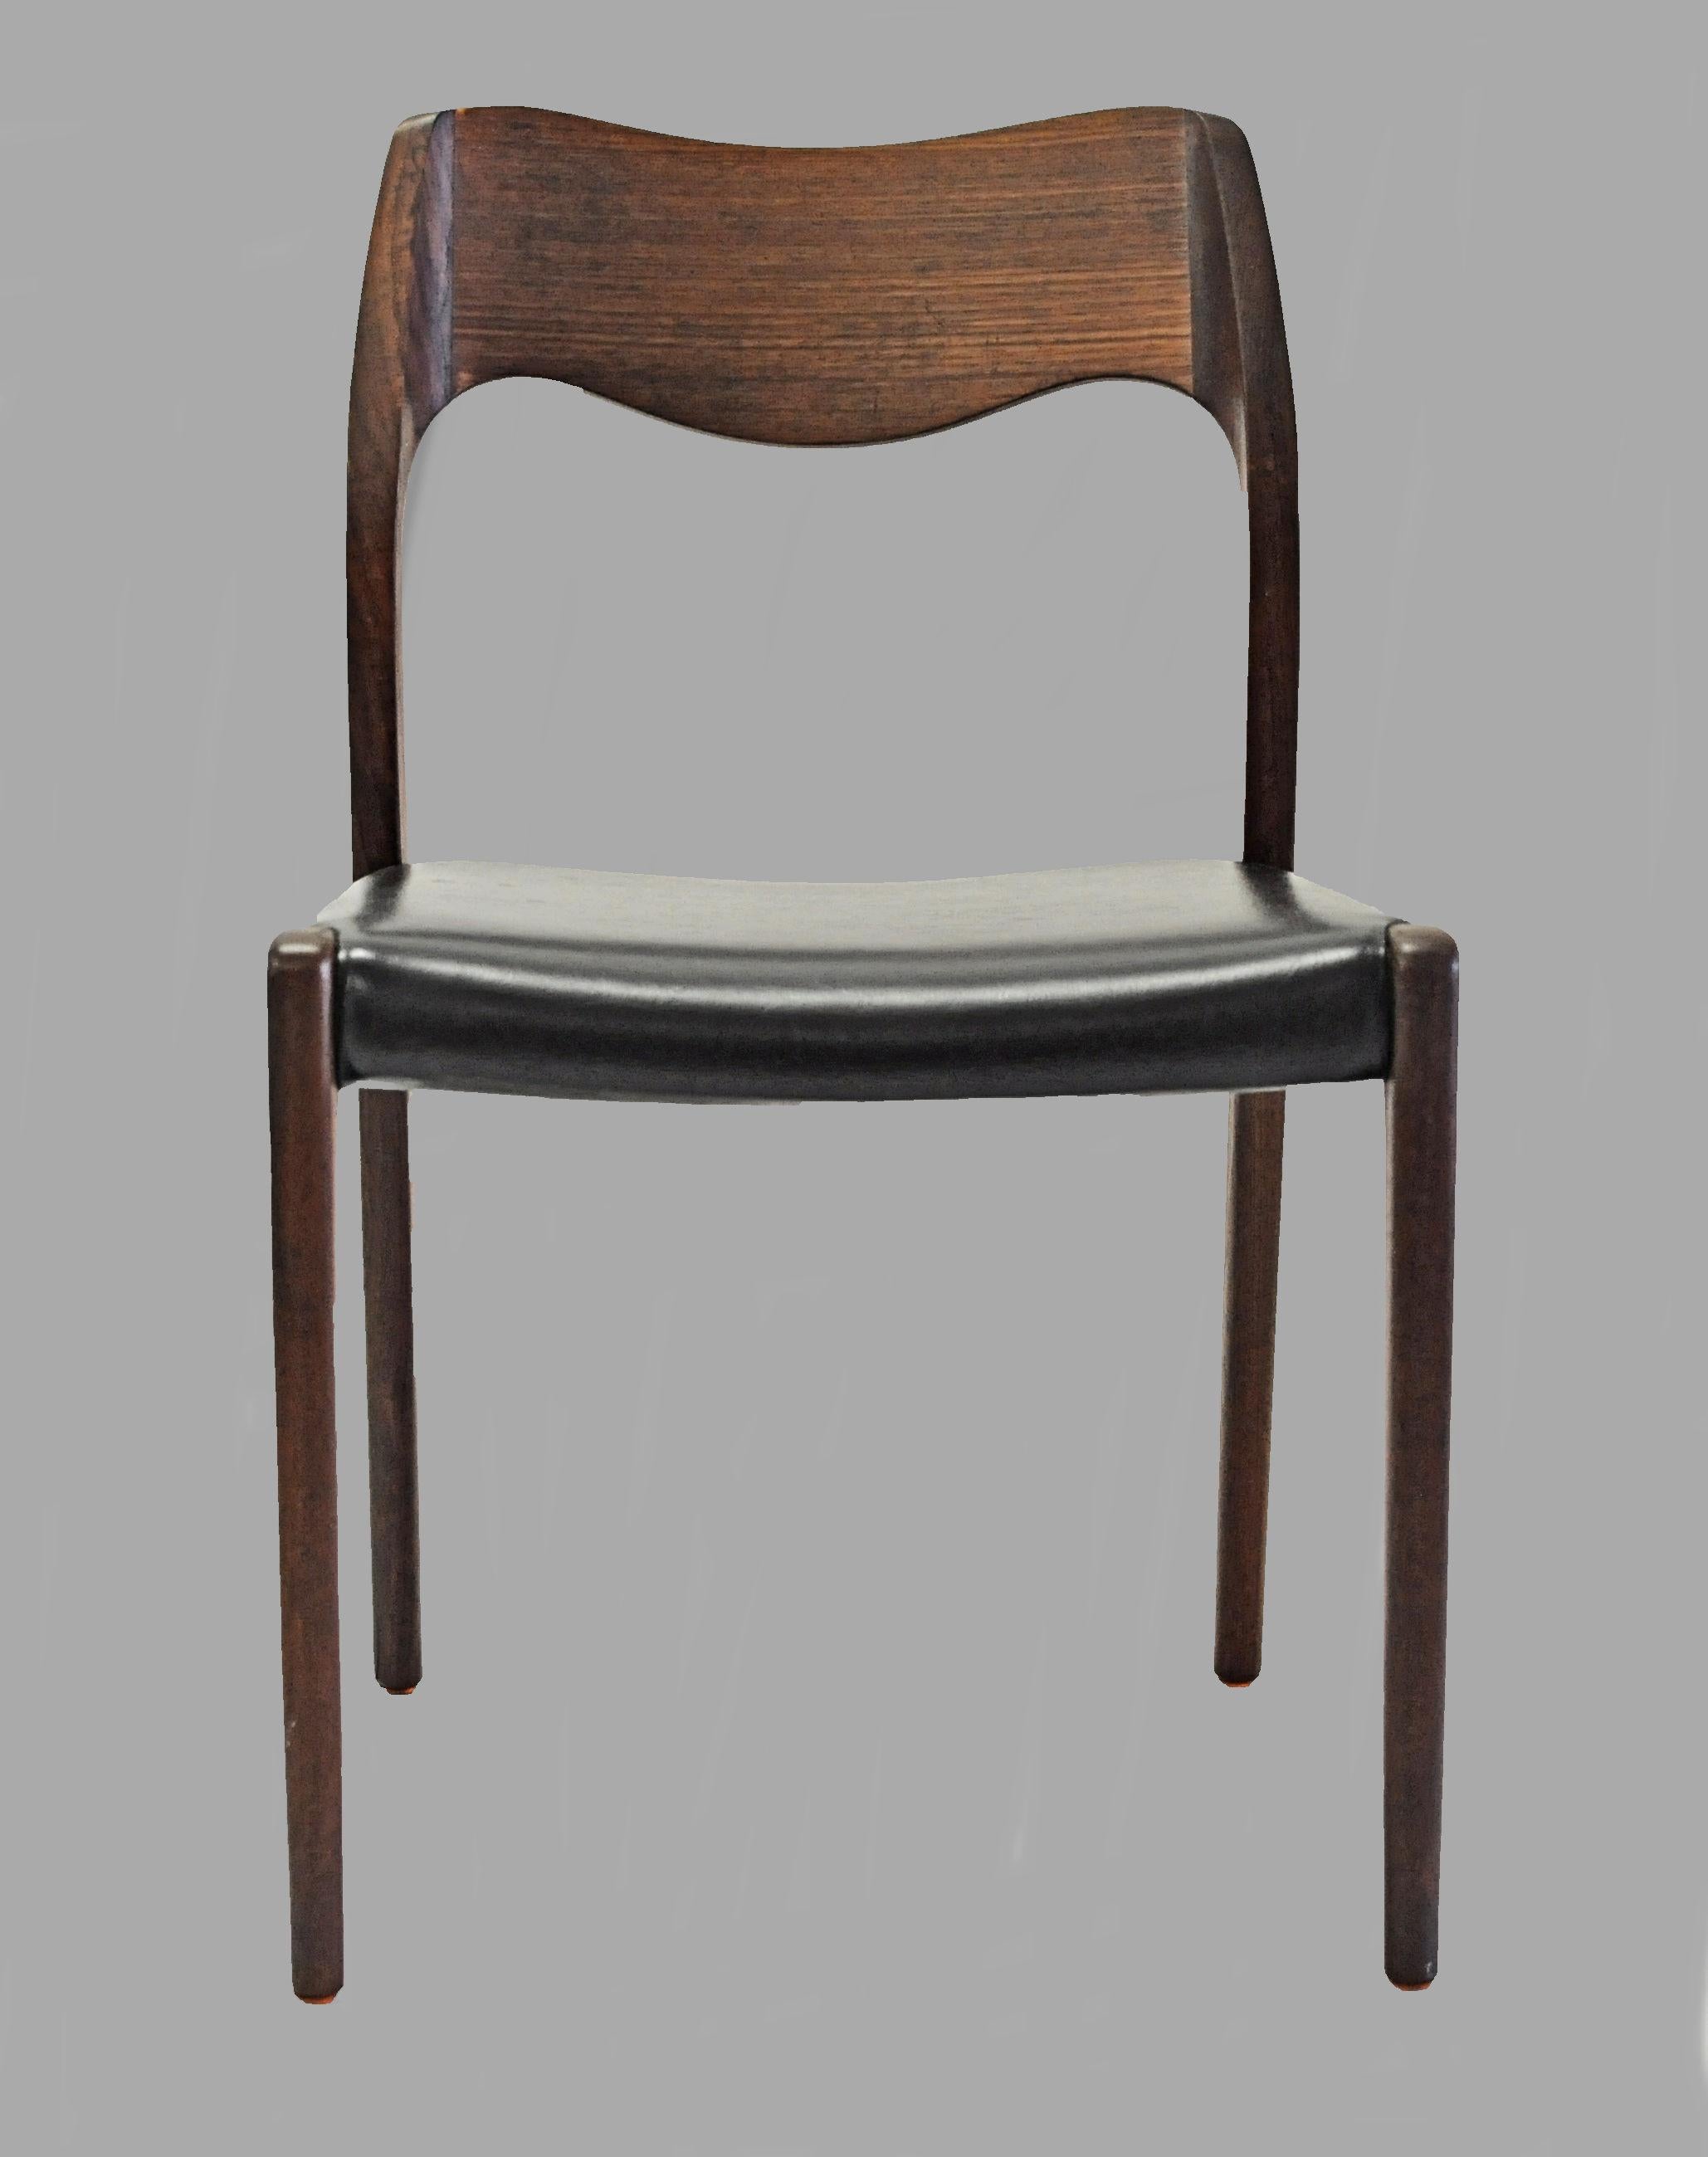 Satz von 12 Esszimmerstühlen aus Teakholz, entworfen von Niels Otto Møller im Jahr 1951.

Die Stühle haben einen massiven Rahmen und eine Rückenlehne aus Teakholz mit geraden Beinen und einer eleganten, organisch geformten Rückenlehne mit den